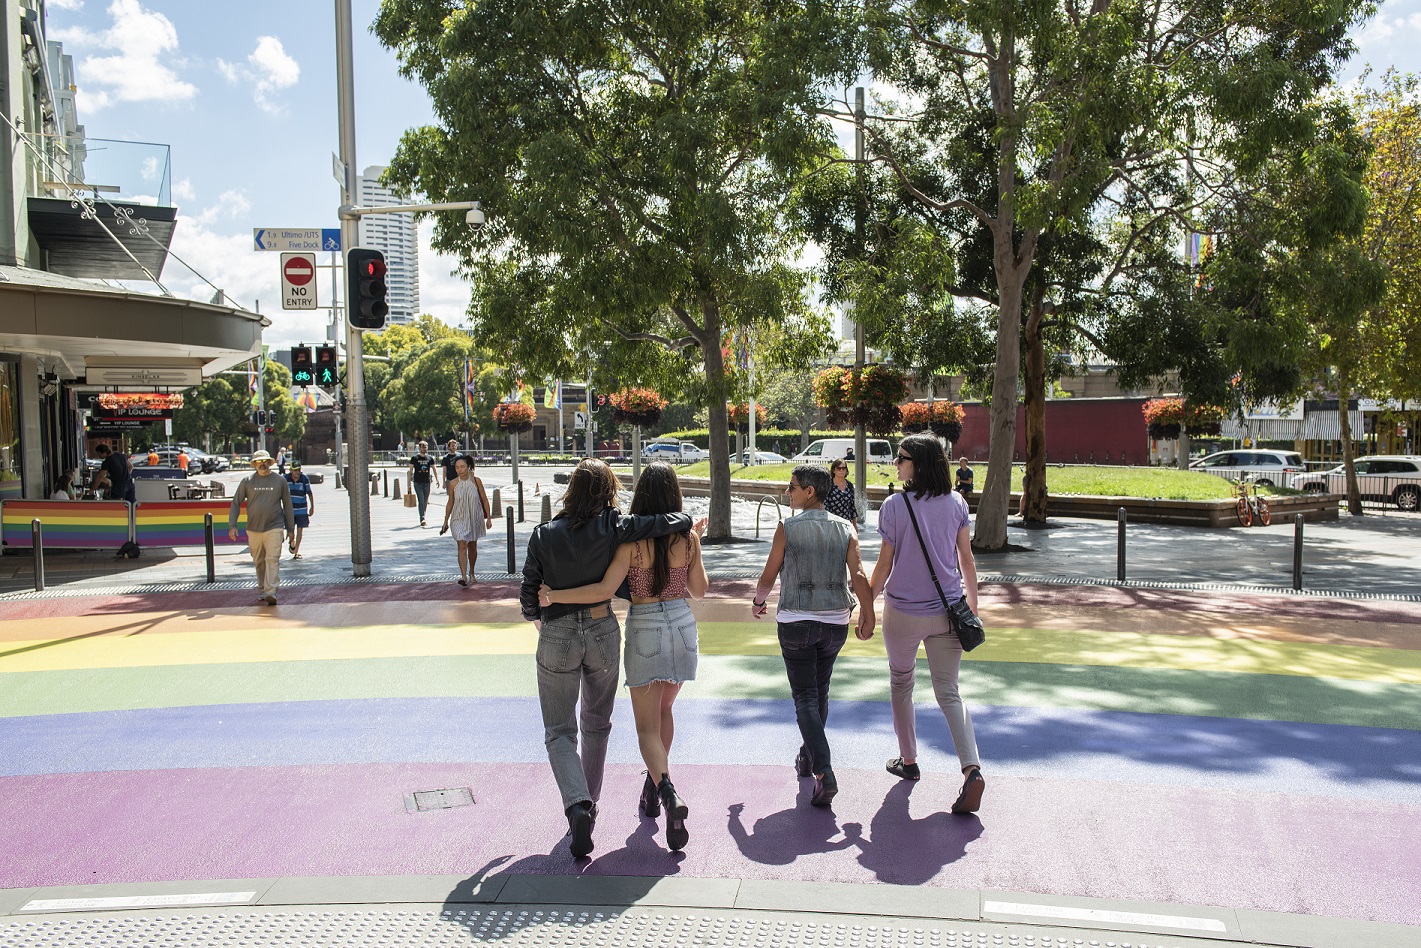 Most LGBTQIA+ friendly cities in Australia